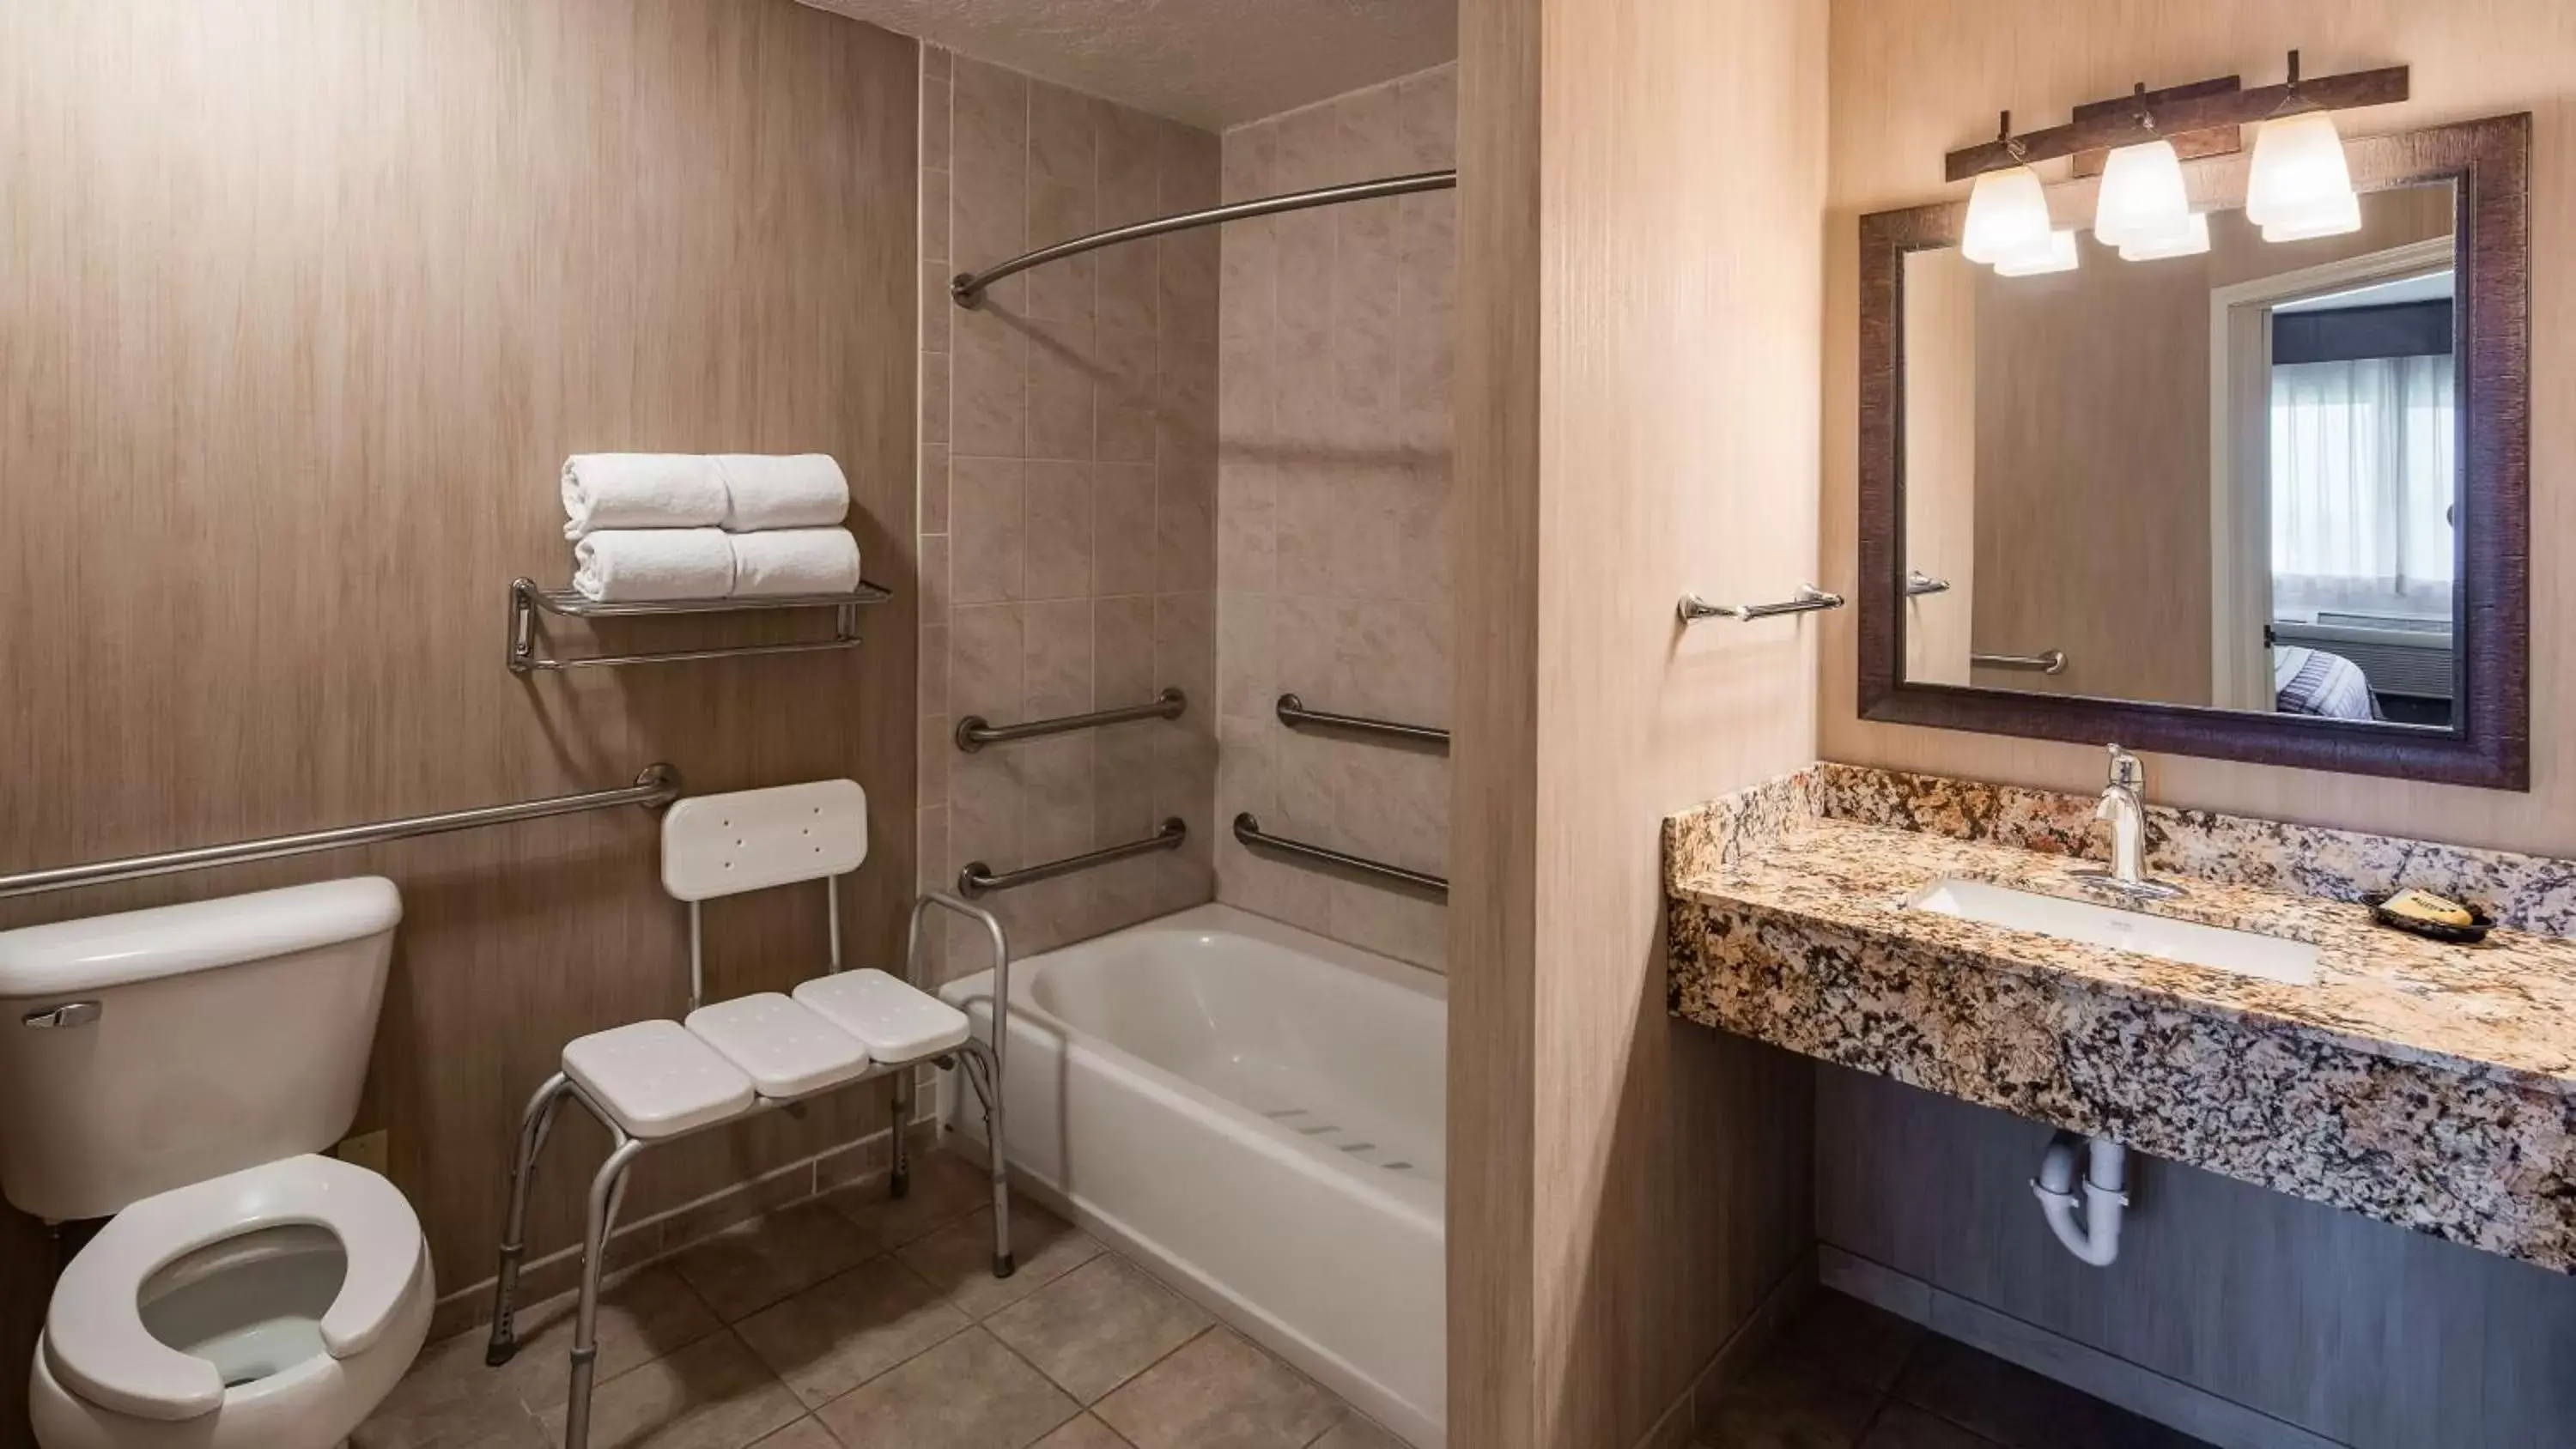 Bathroom in Best Western Plus Flathead Lake Inn and Suites